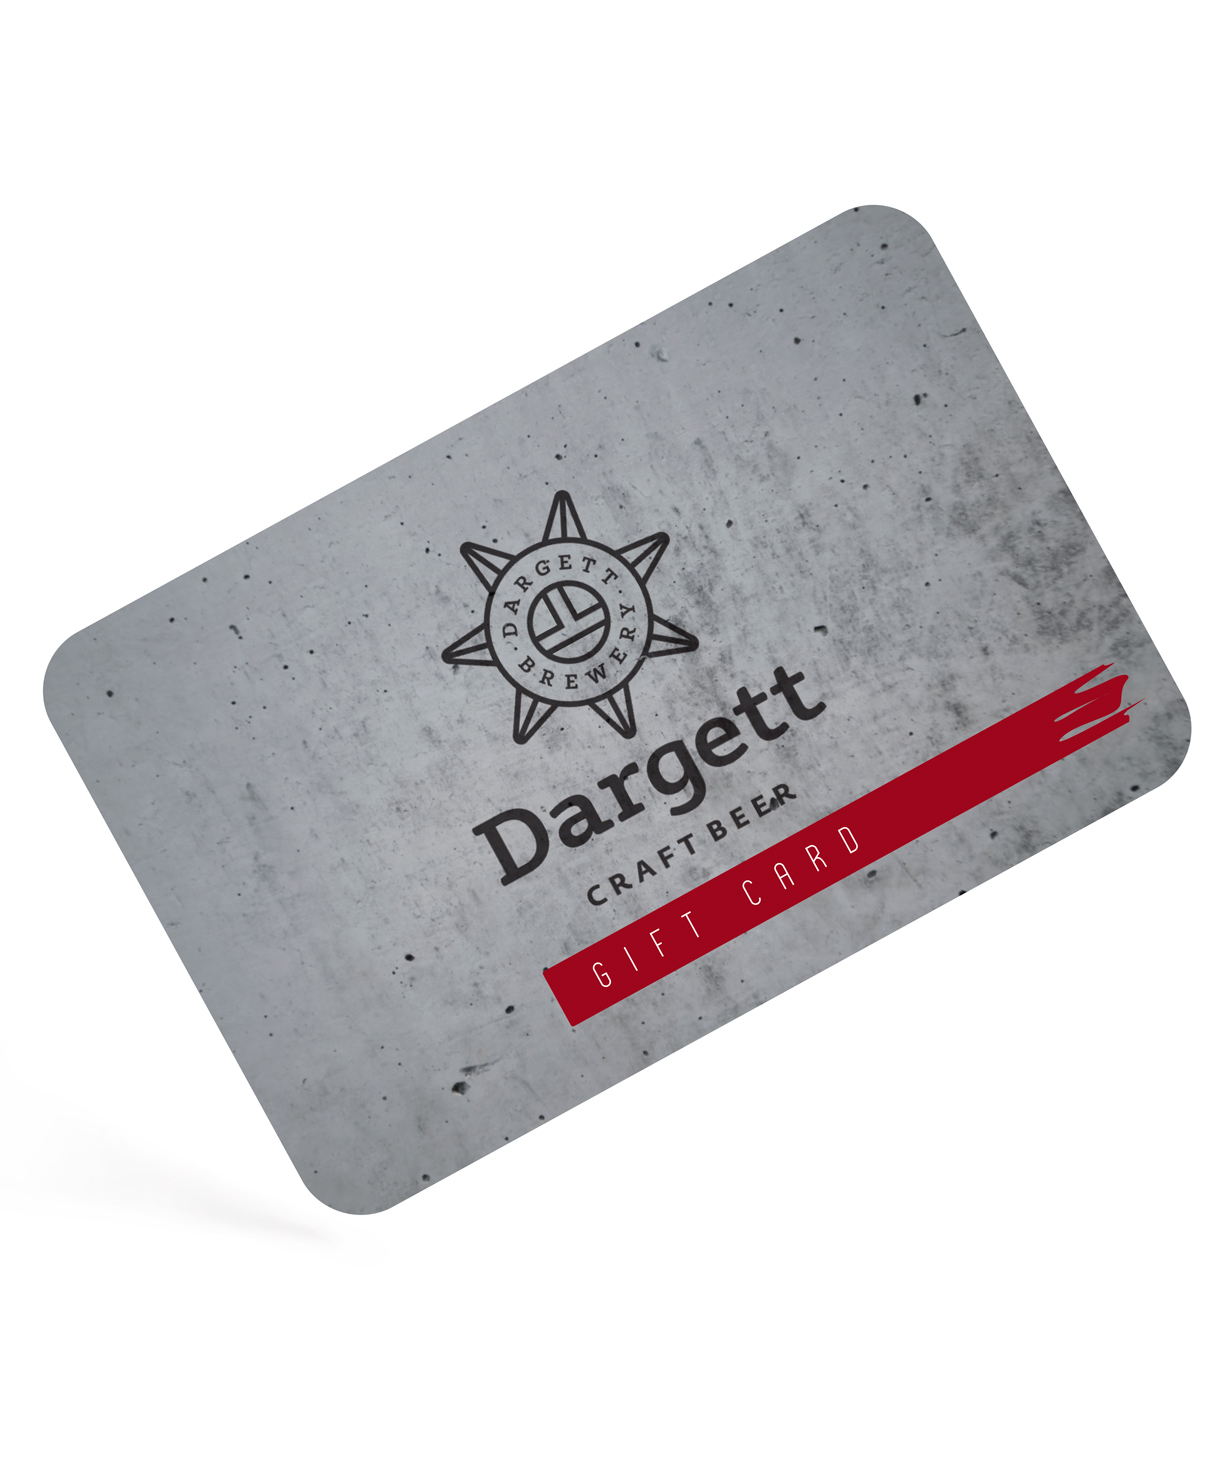 Նվեր-քարտ «Dargett» 5000